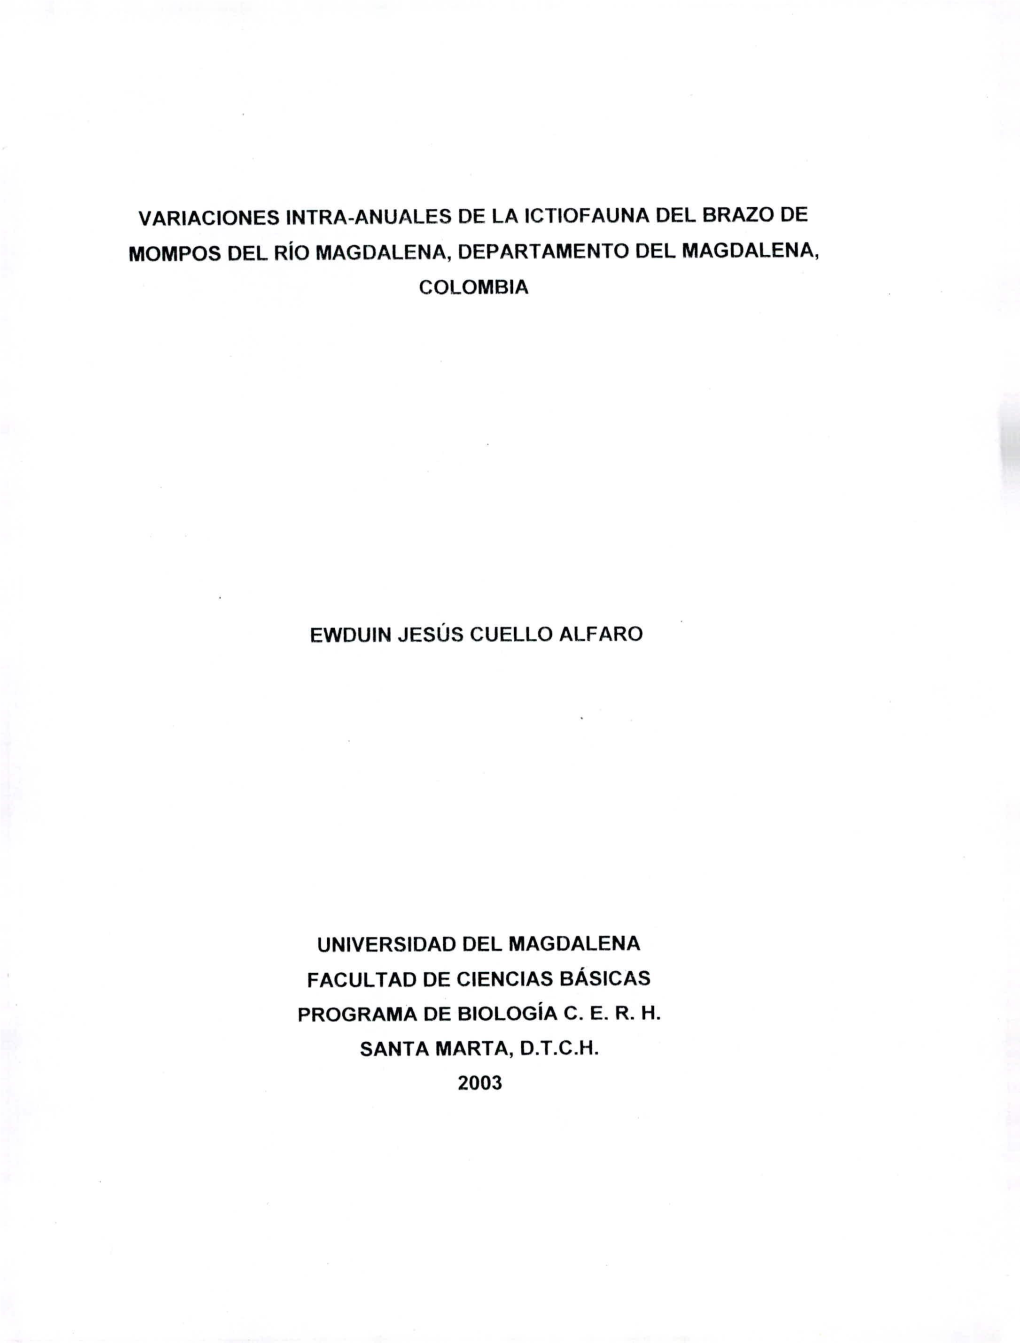 Variaciones Intra-Anuales De La Ictiofauna Del Brazo De Mompos Del Río Magdalena, Departamento Del Magdalena, Colombia